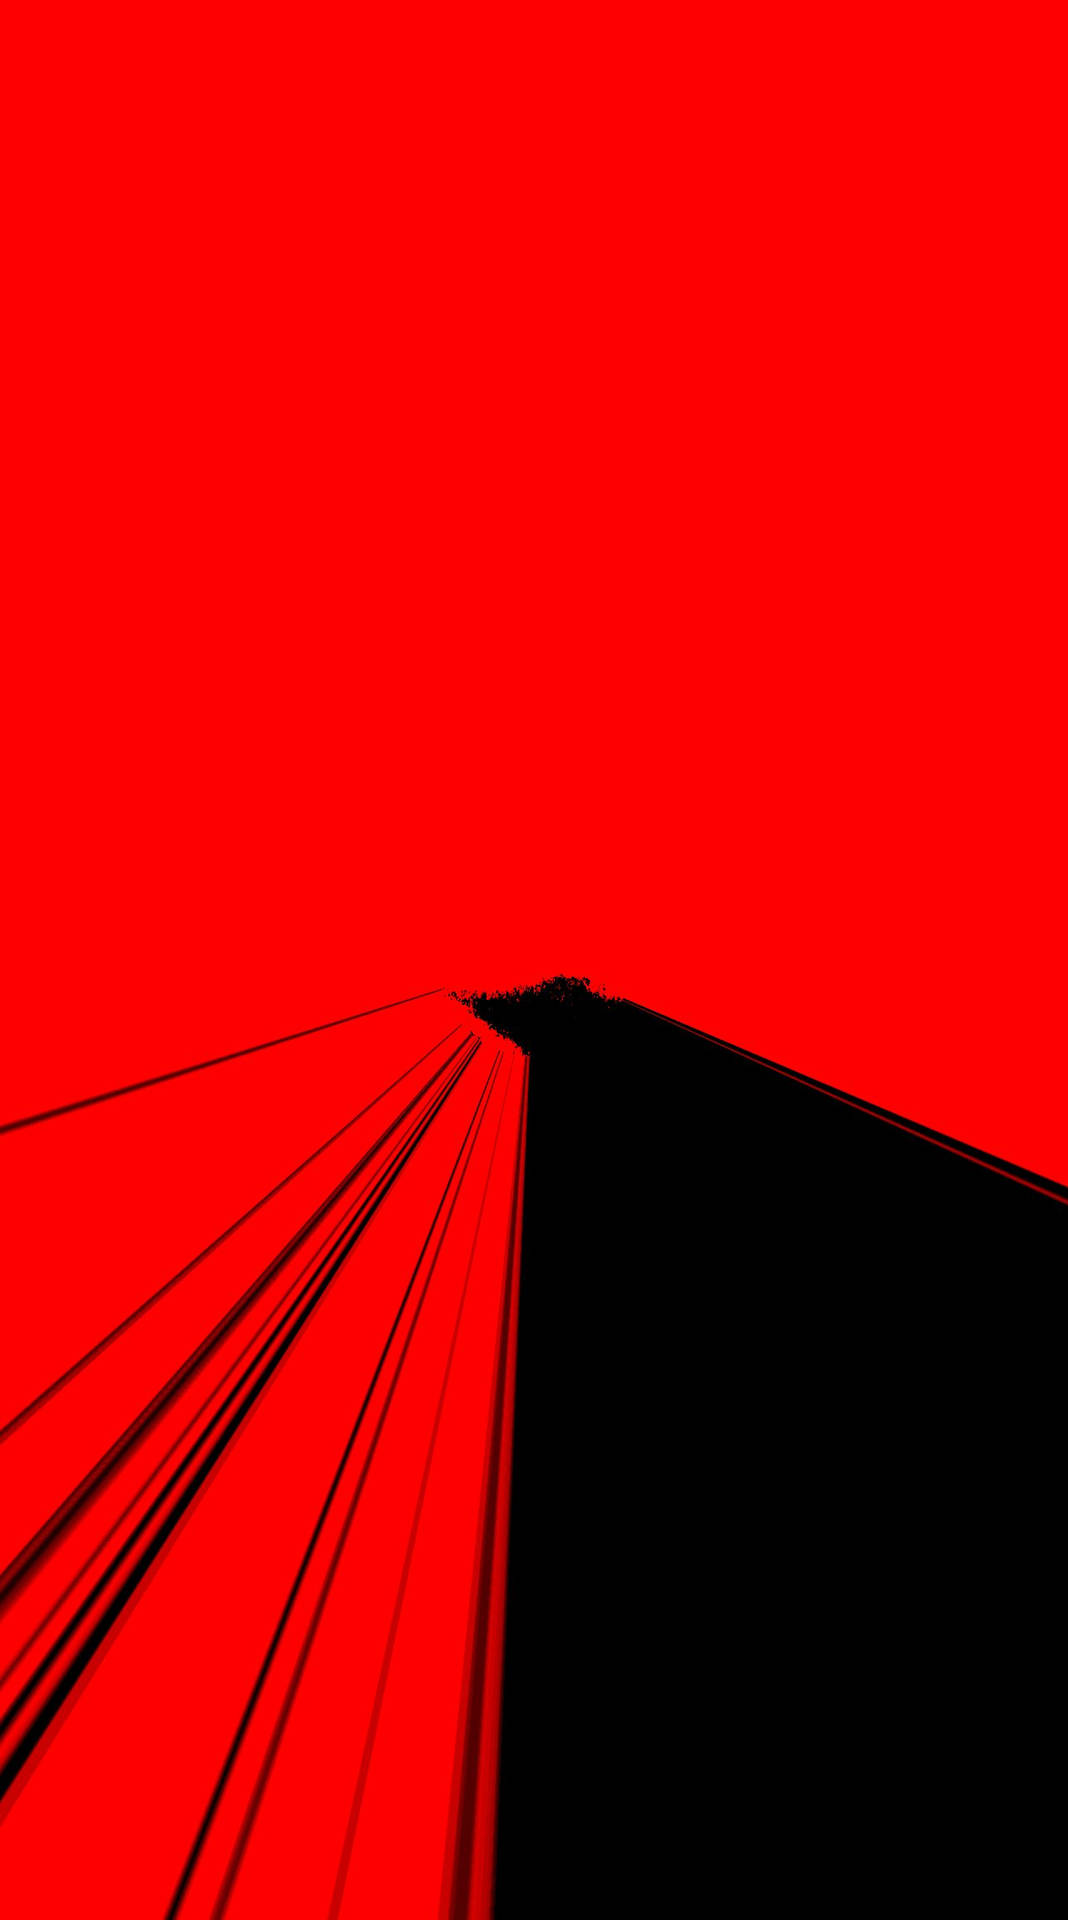 Red And Black Vaporwave Road Background